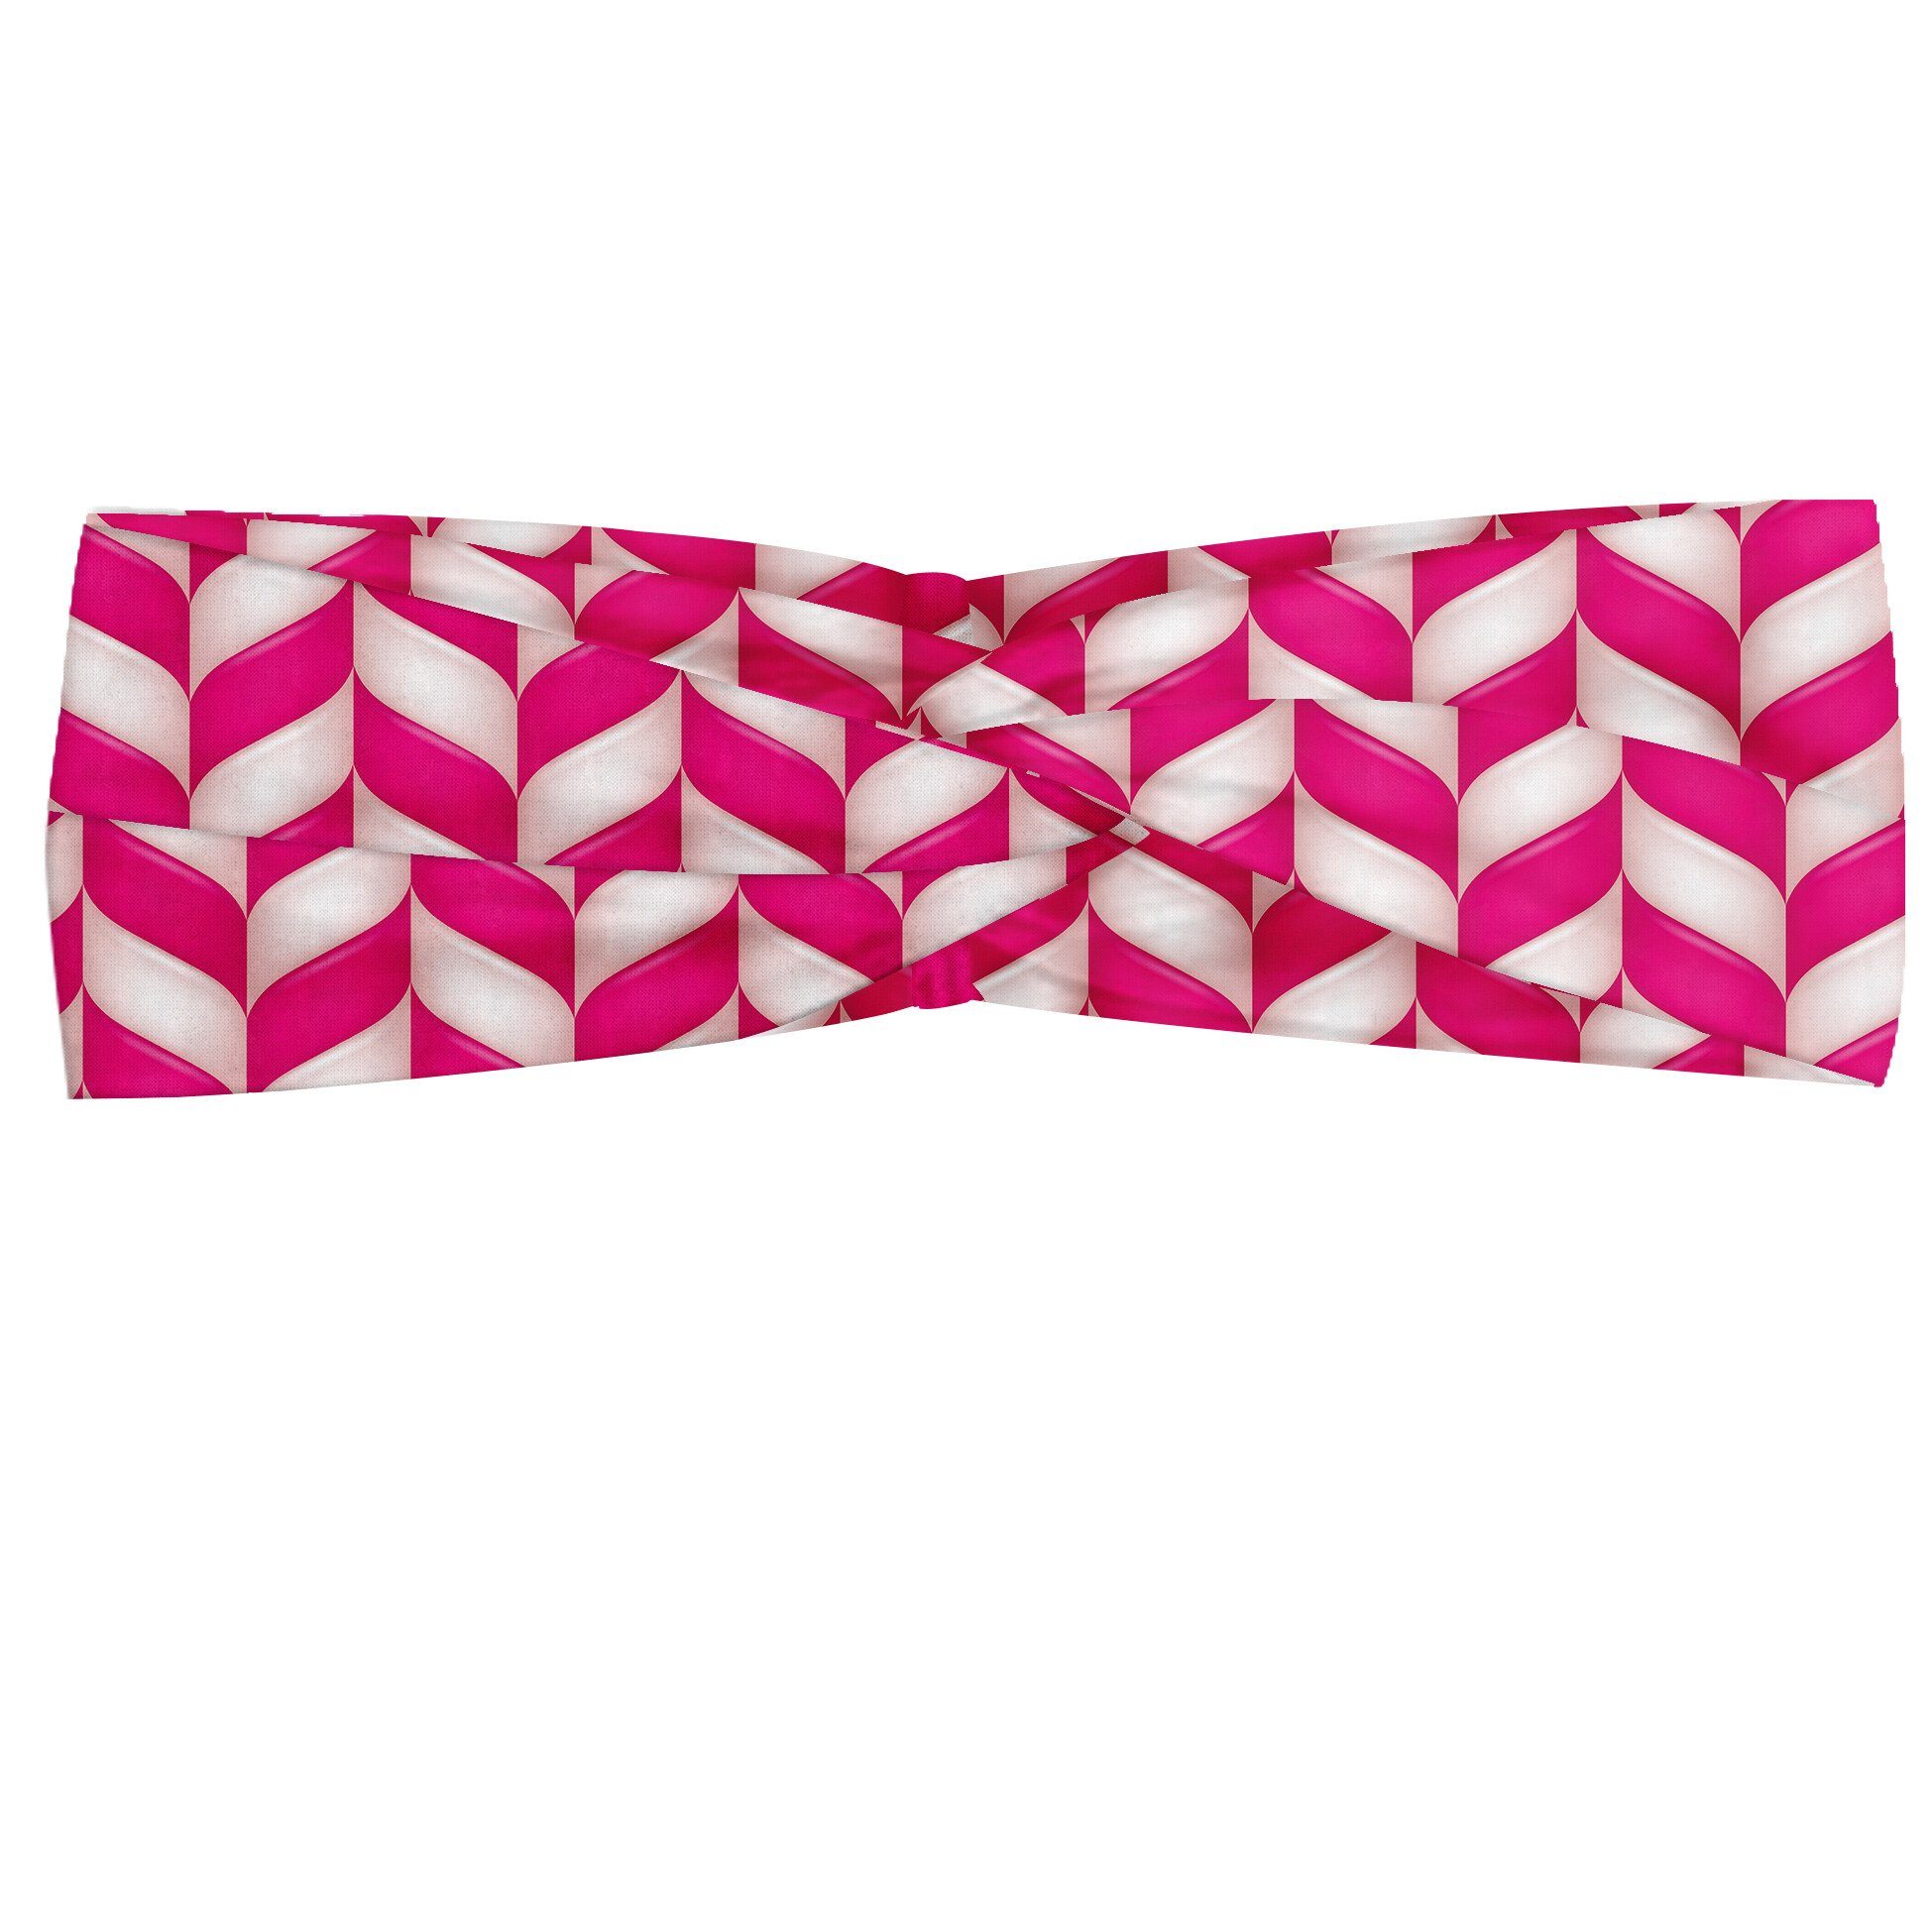 Abakuhaus Stirnband Elastisch und Angenehme alltags accessories rosa, Weiß, Vibrant gewellte Linien